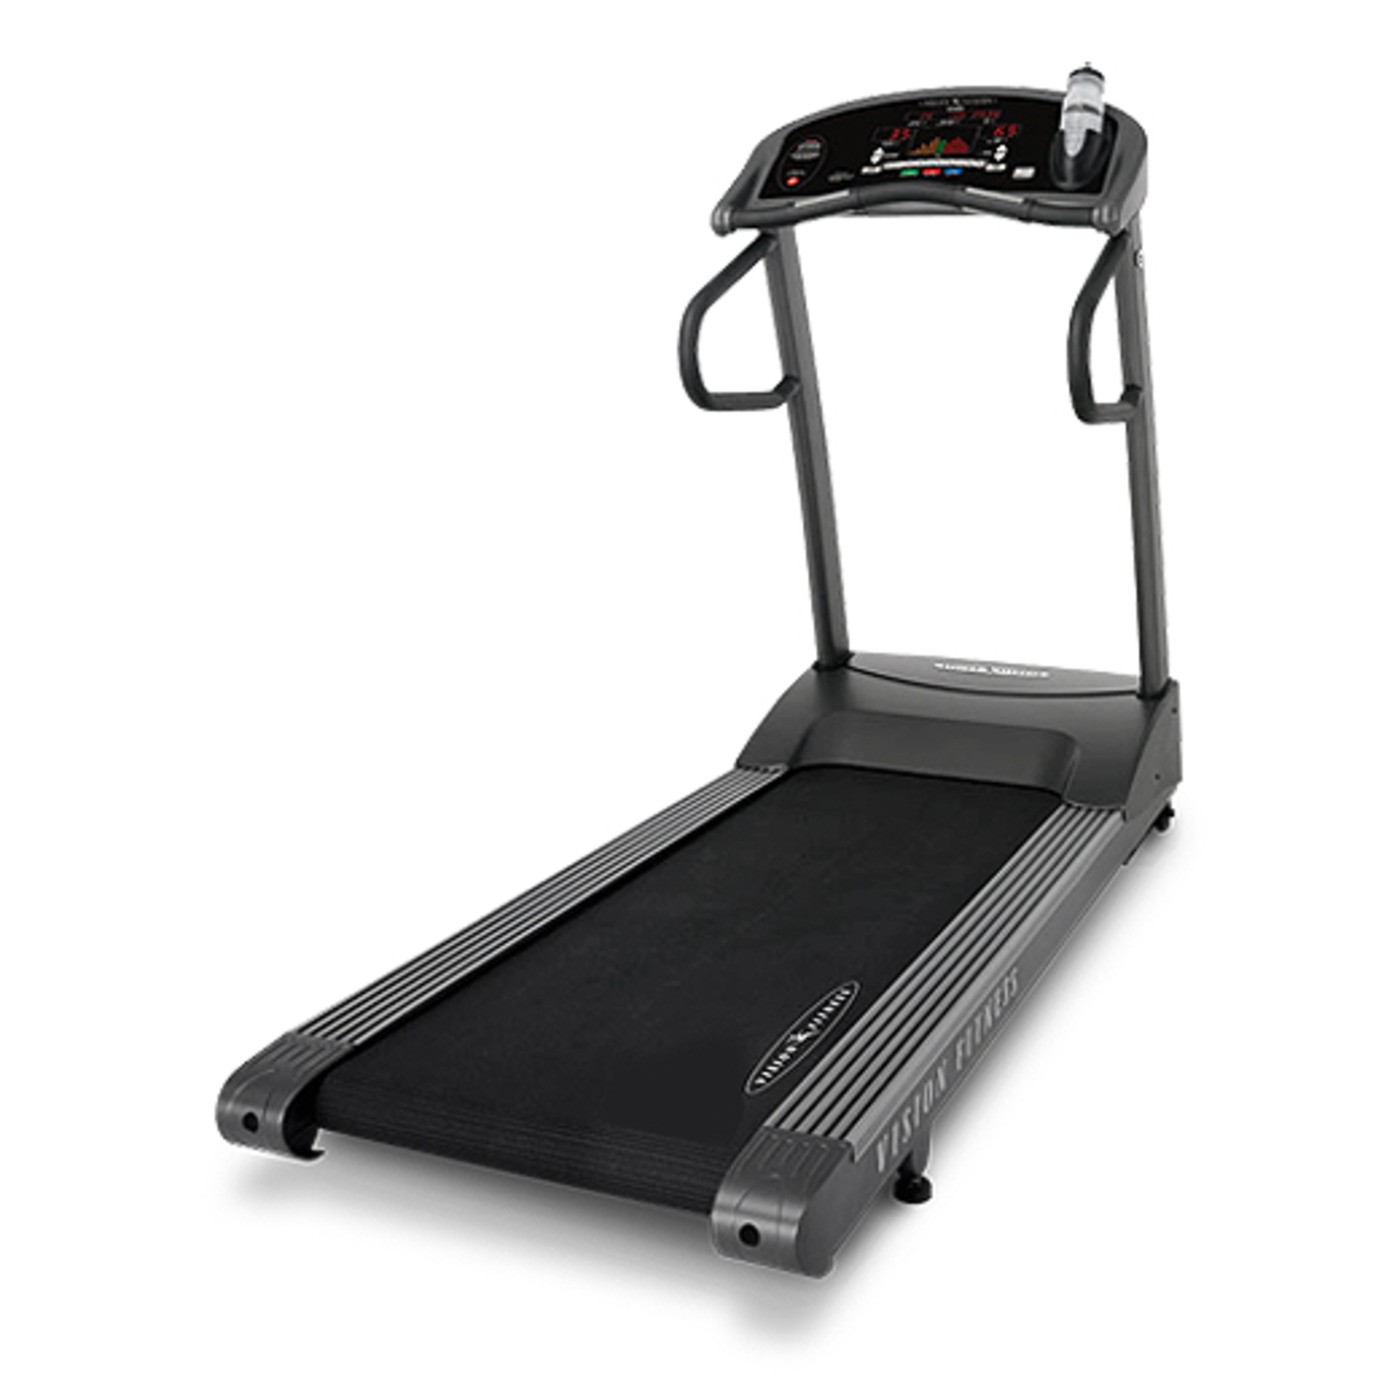 T9700S Full-Platform Treadmill